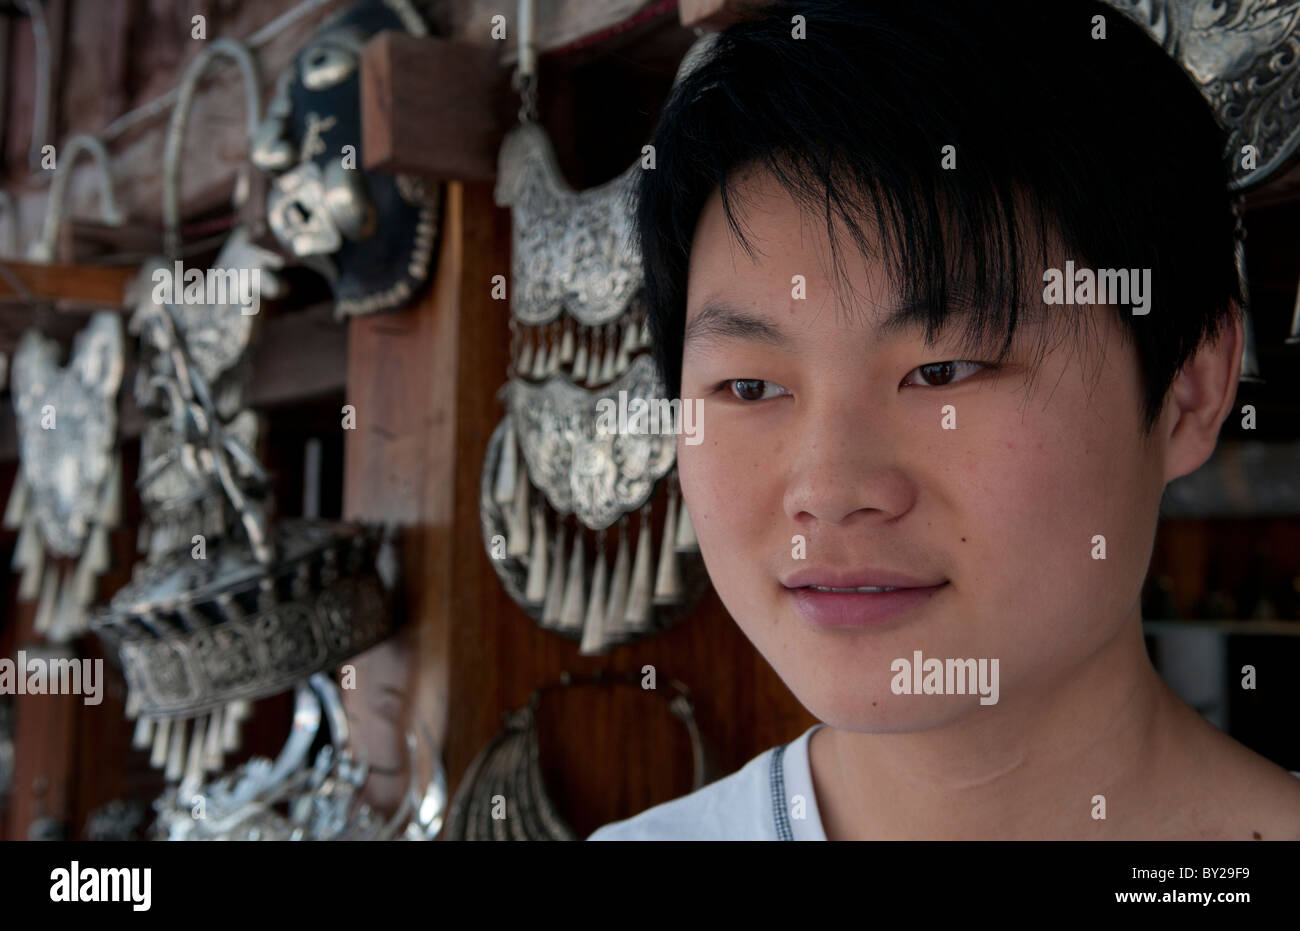 Jeune garçon bijoux en argent vente en magasin Luang Phabang Laos Asie Laos Banque D'Images